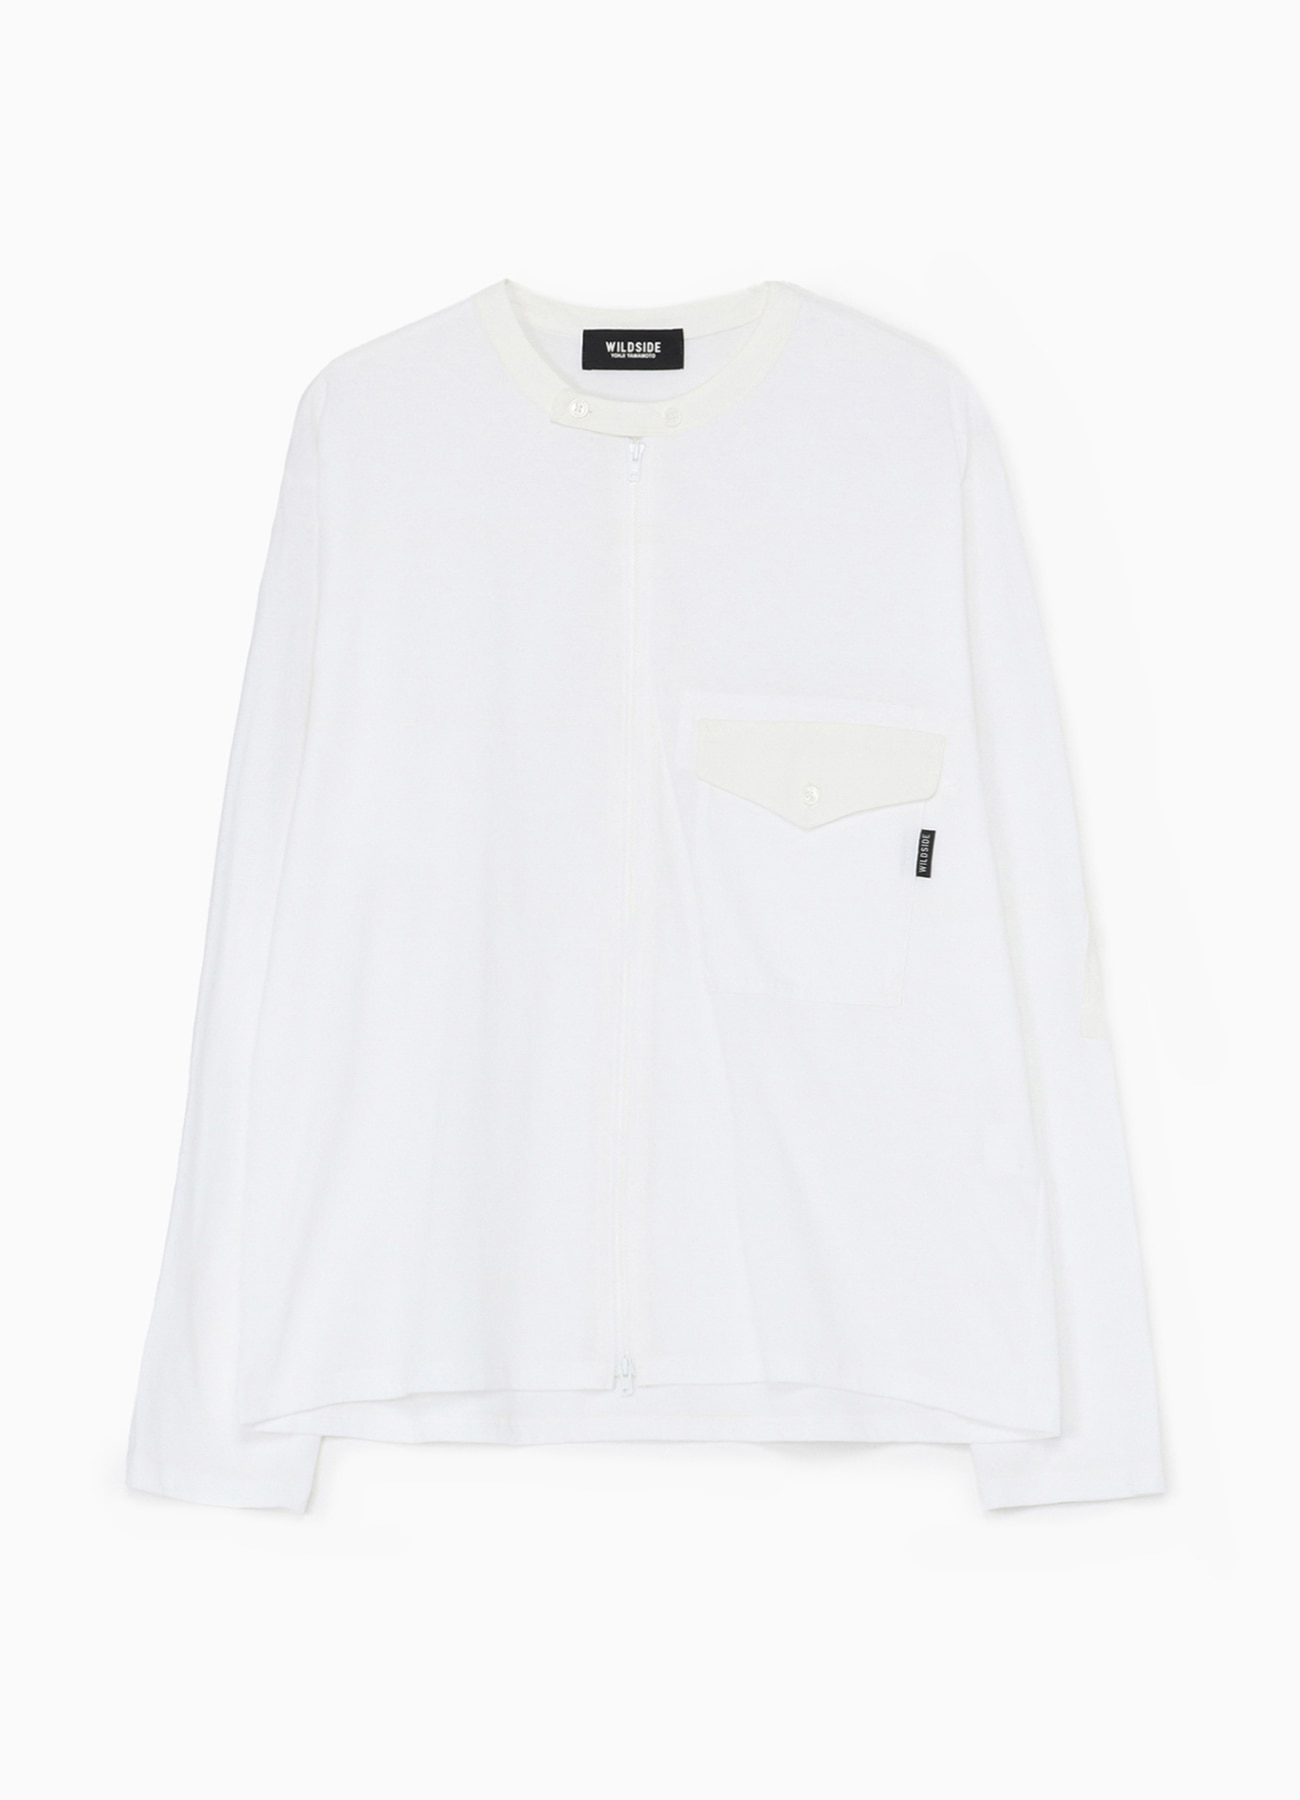 Cotton Jersey Full Zip Long Sleeve T-shirt